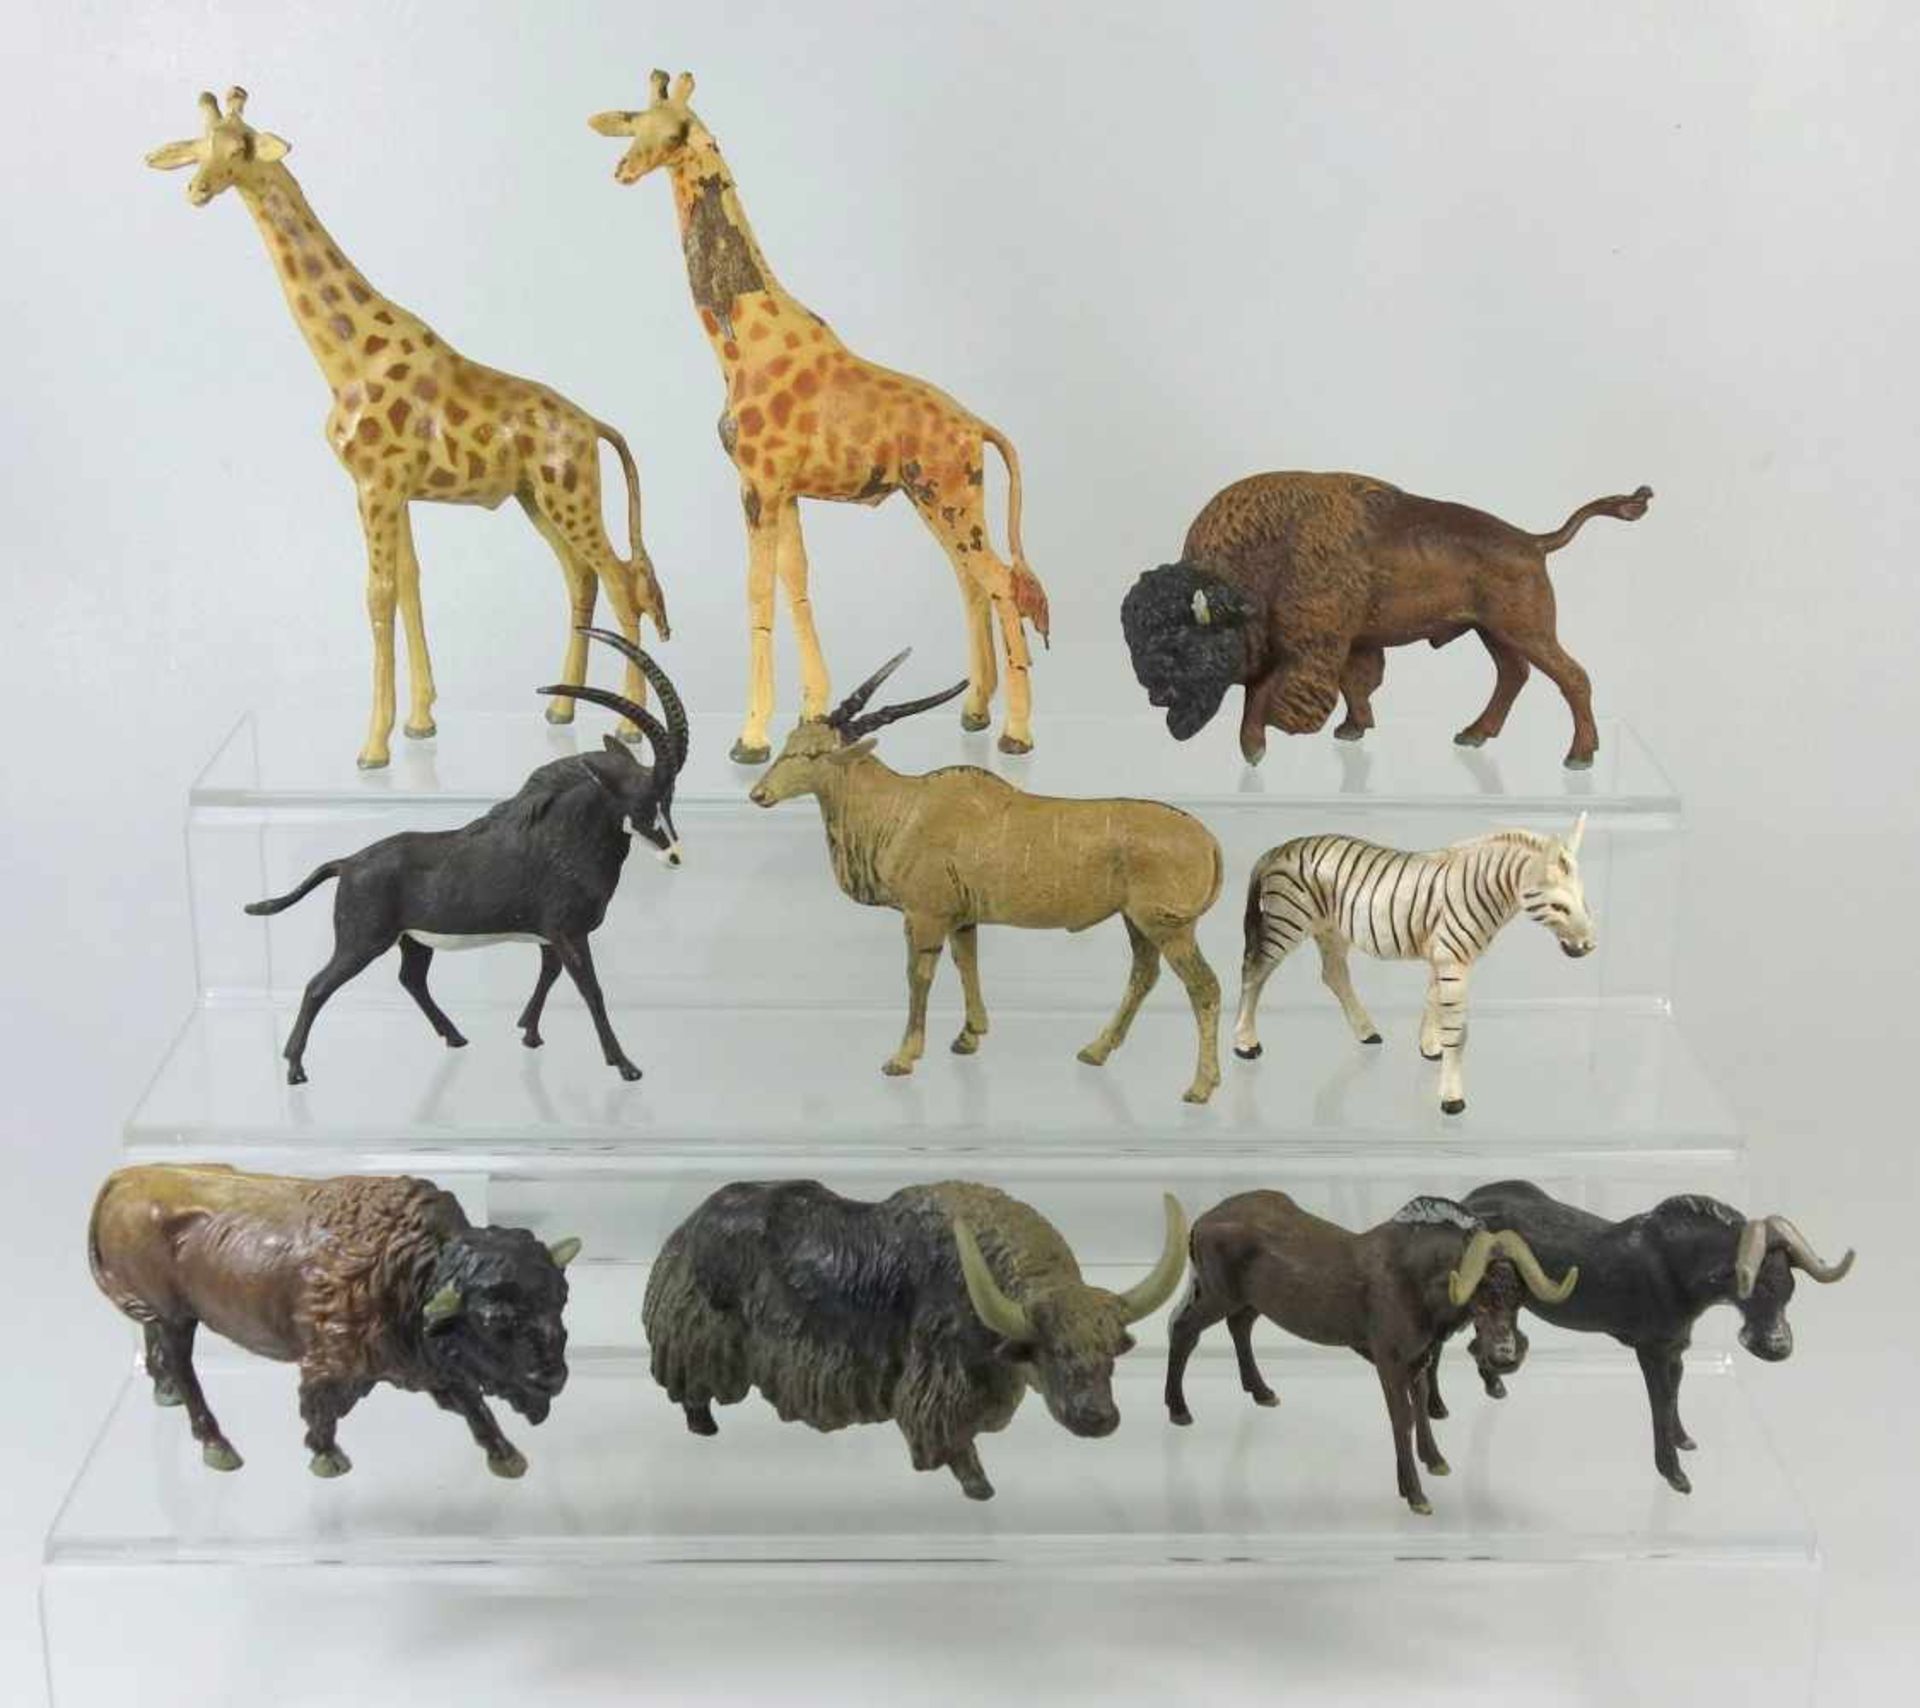 10 wilde Huftiere, Masse, vorw. Lineolu.a. 2 Giraffen, Bison, Wisent, Kaffernbüffel, Yak, Gazelle,